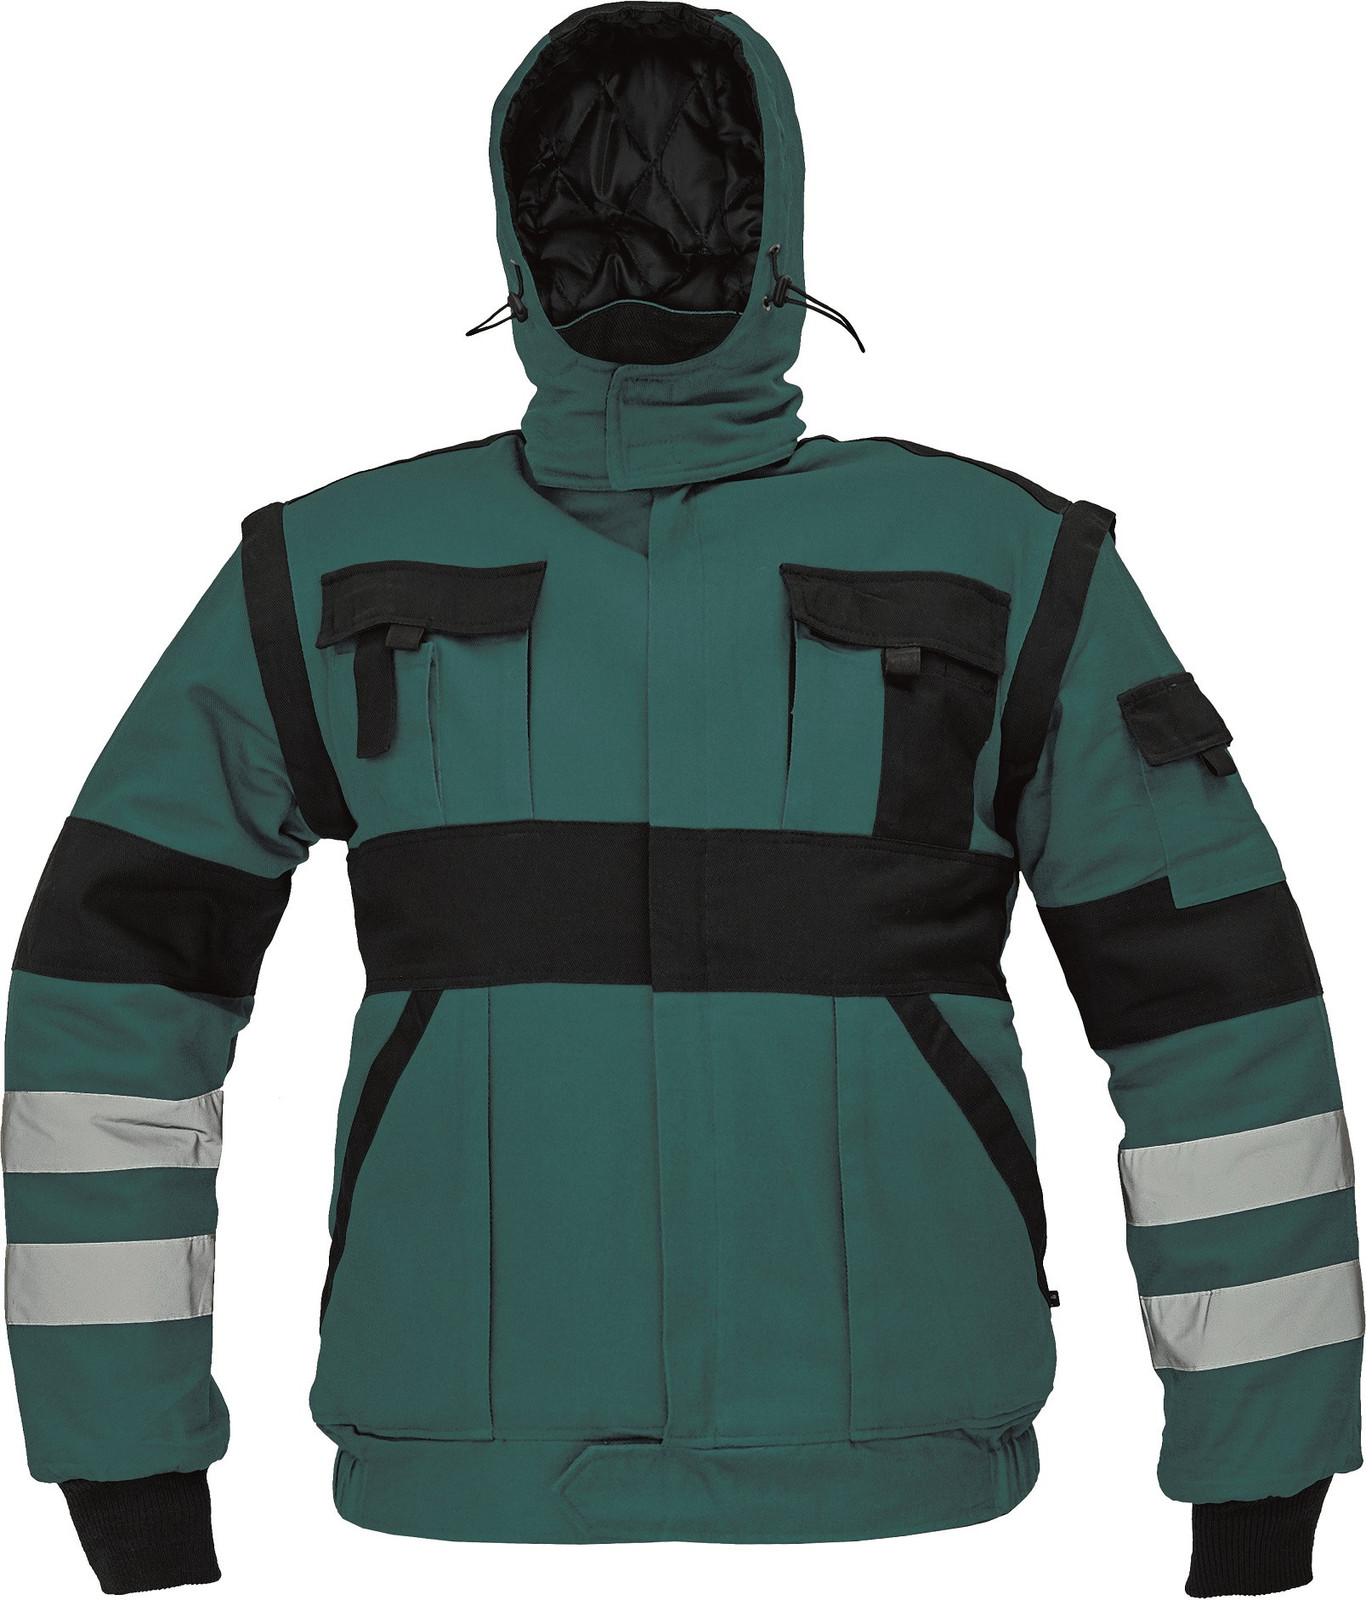 Zateplená montérková bunda Max Winter s reflexnými pruhmi 2v1 - veľkosť: 64, farba: zelená/čierna